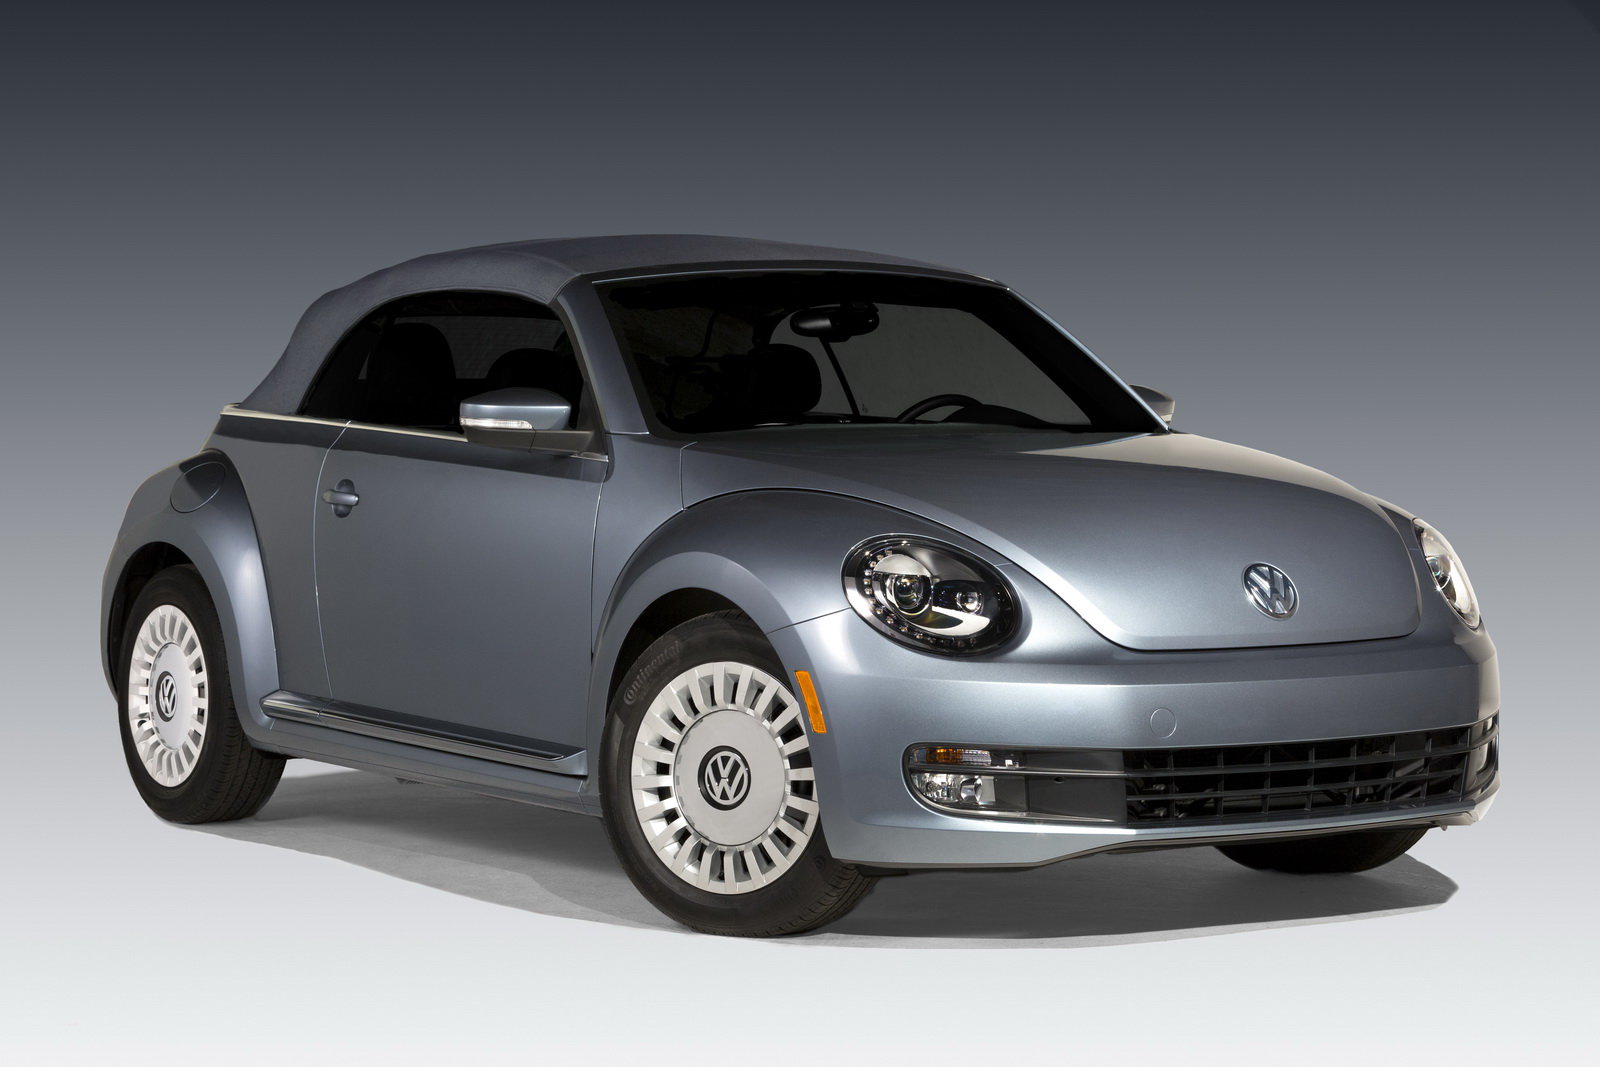 Inspirací tomuto vozu byl Beetle Jeans ze sedmdesátých let, Volkswagen Beetle Denim.